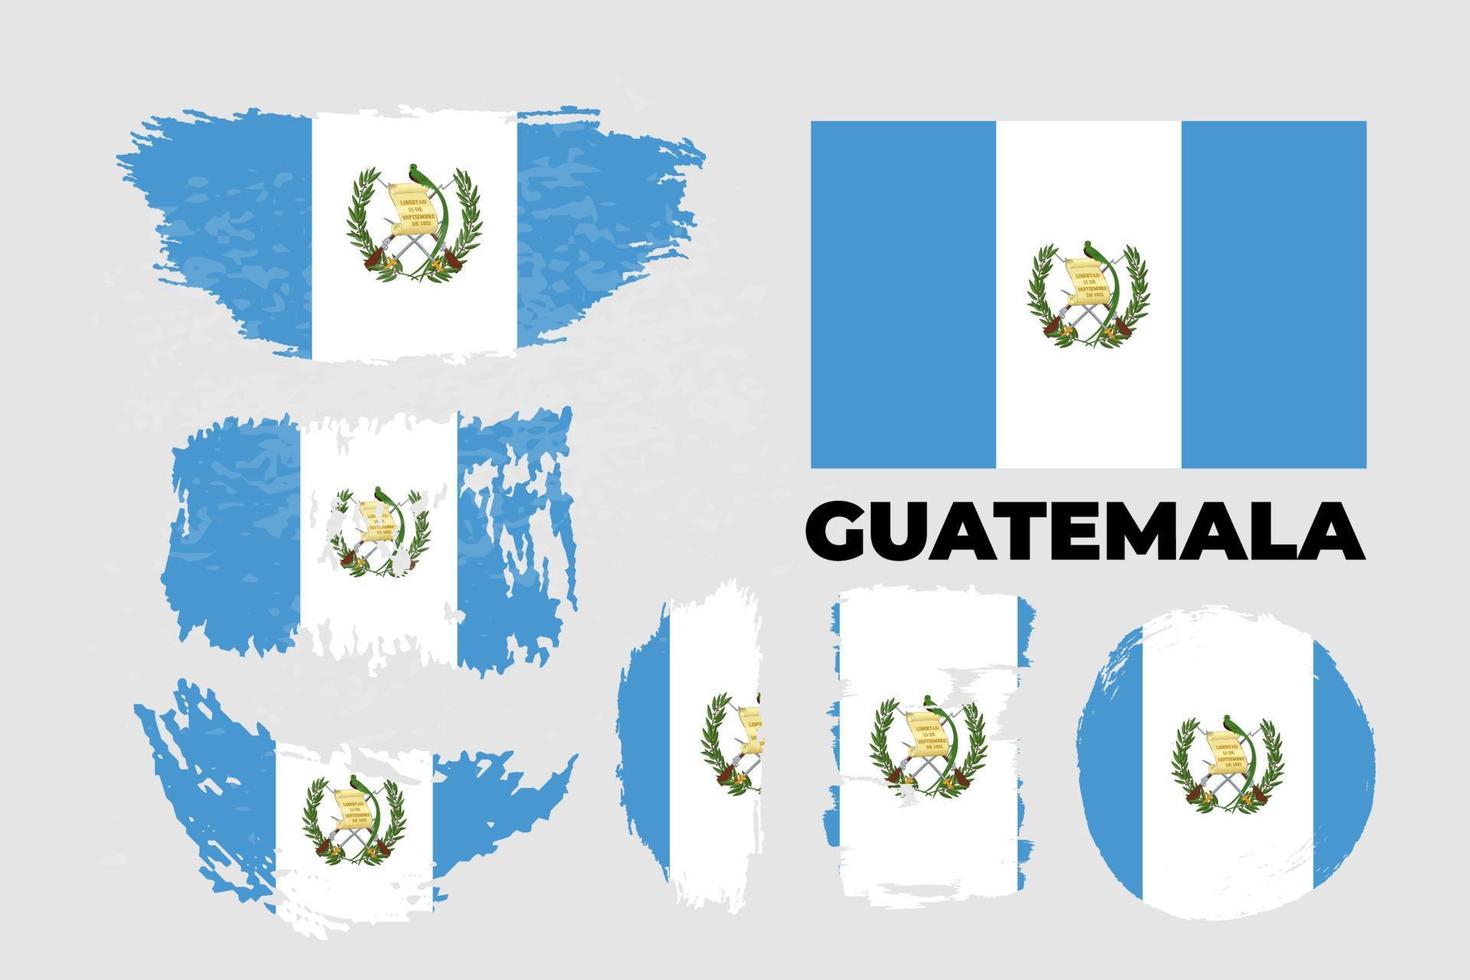 vlag van guatemala, republiek guatemala. sjabloon voor prijsontwerp, een officieel document met de vlag van guatemala en ander gebruik. heldere, kleurrijke vectorillustratie. vector illustratie